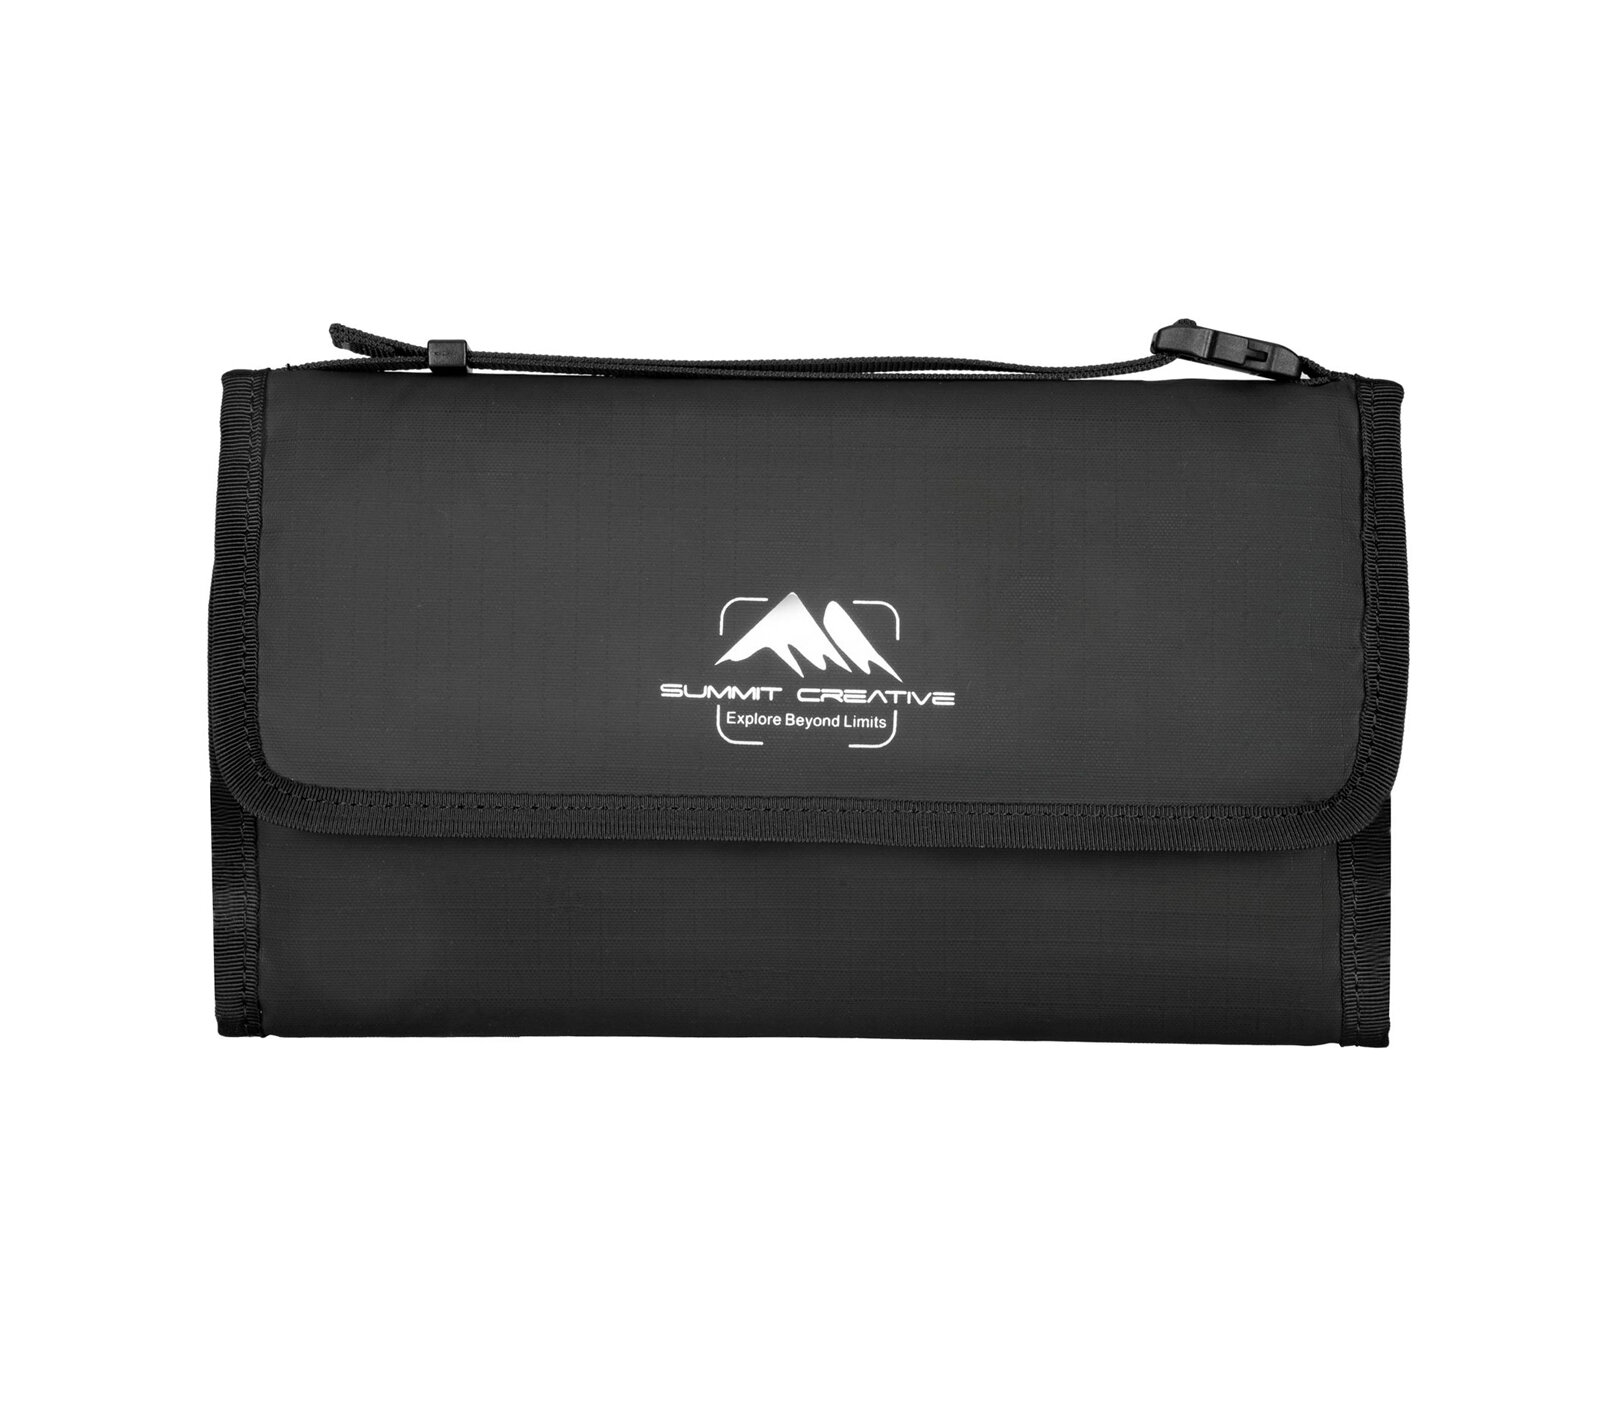 Чехол Summit Creative Filter Bag 100-8, для 8 светофильтров до 100 мм, черный